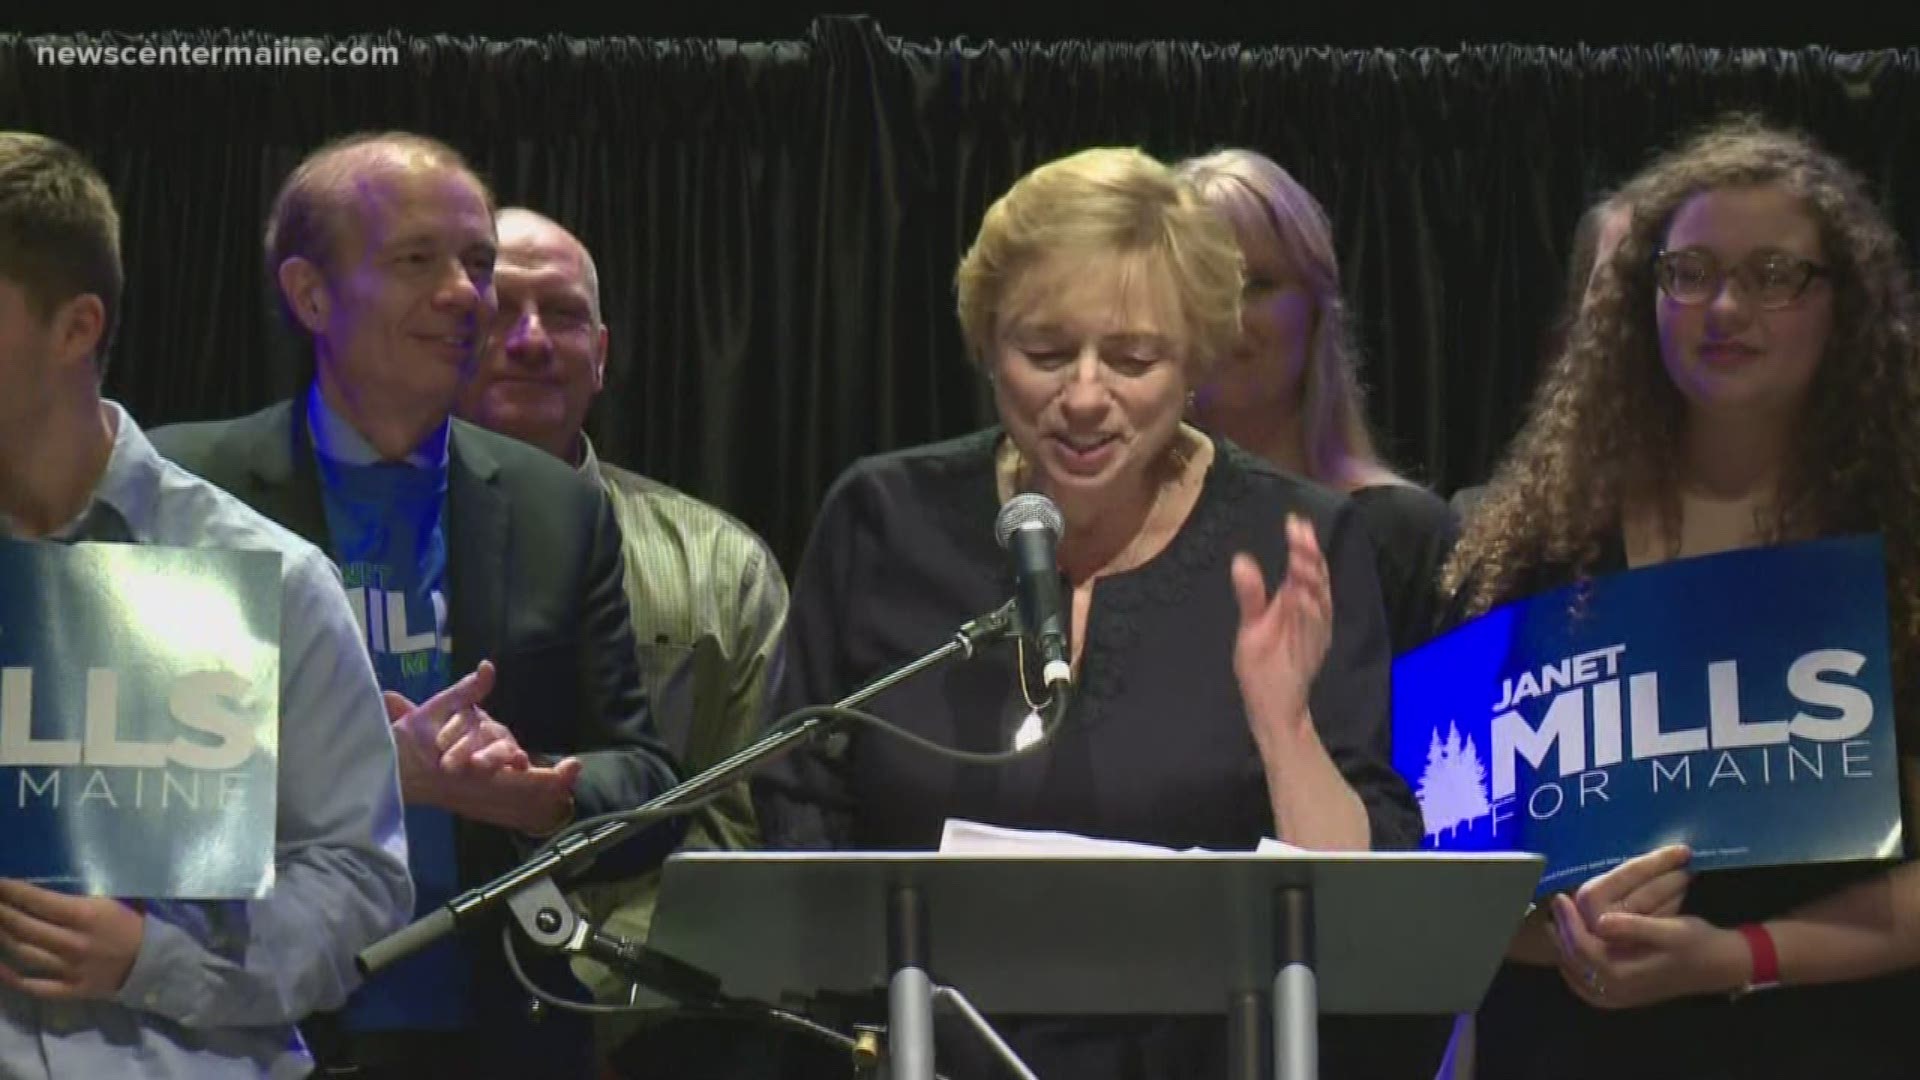 Janet Mills wins gubernatorial election